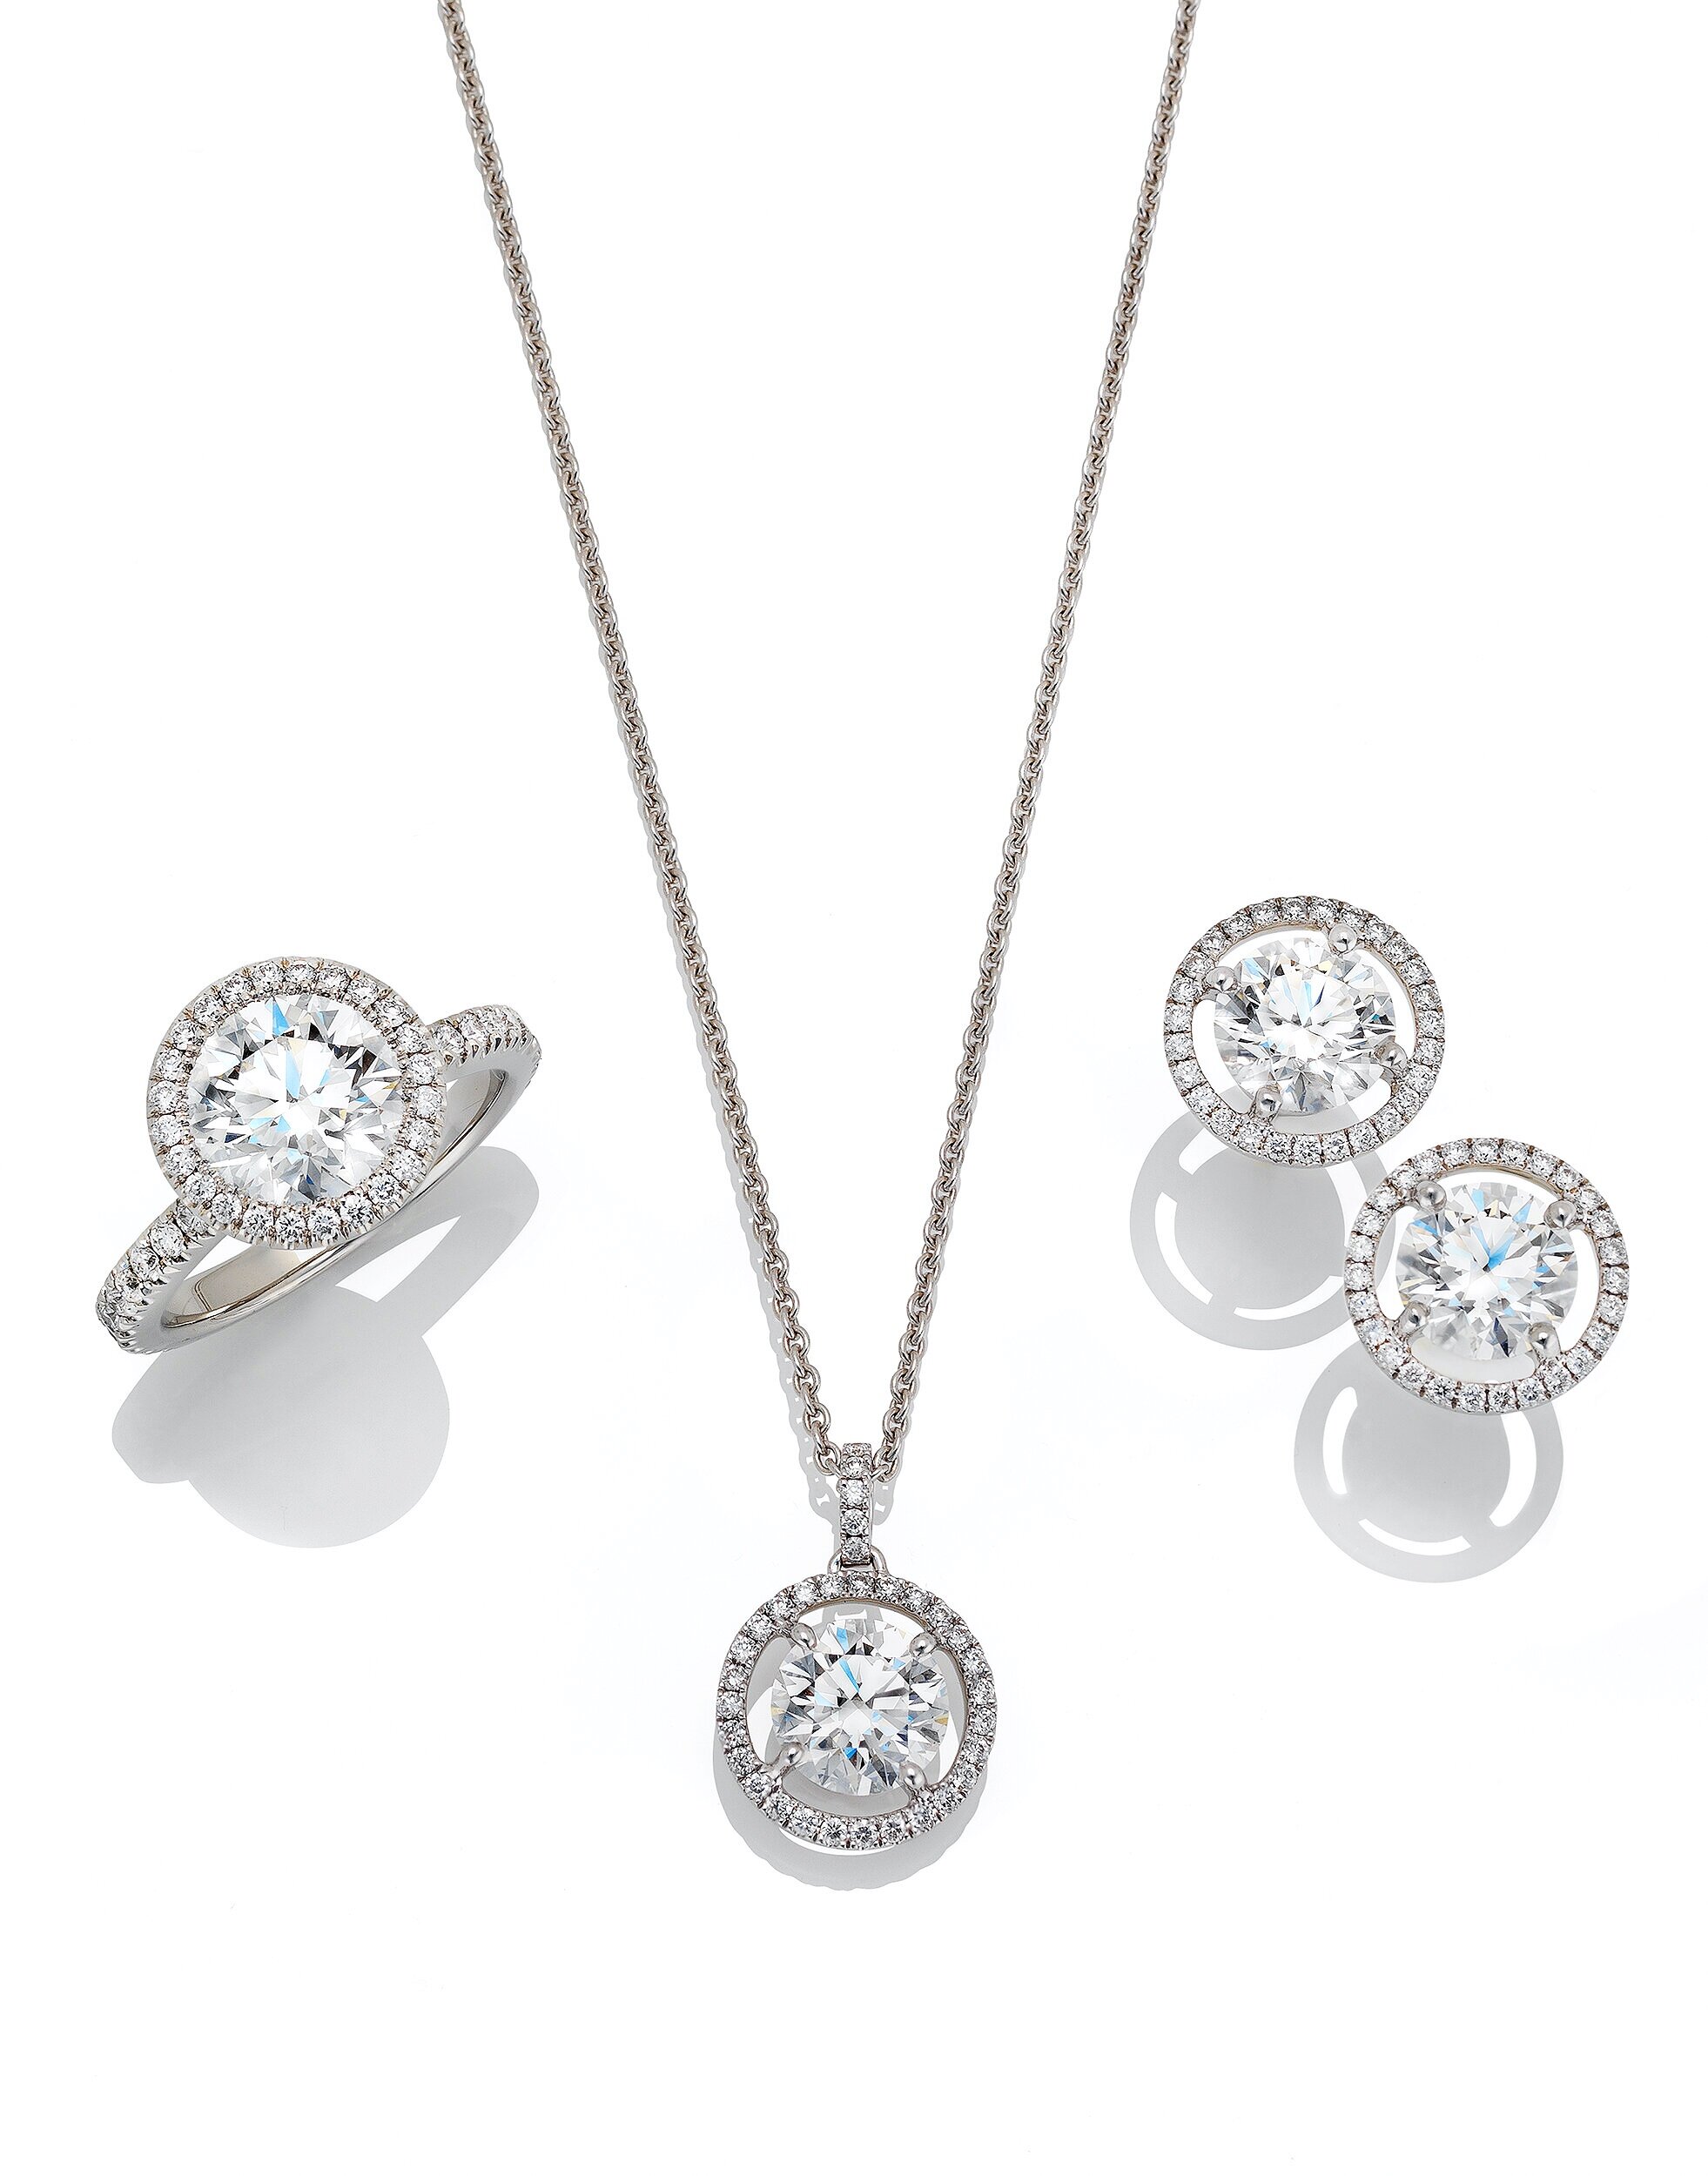  Diamond jewellery shot for De Beers Diamond Jewellers 